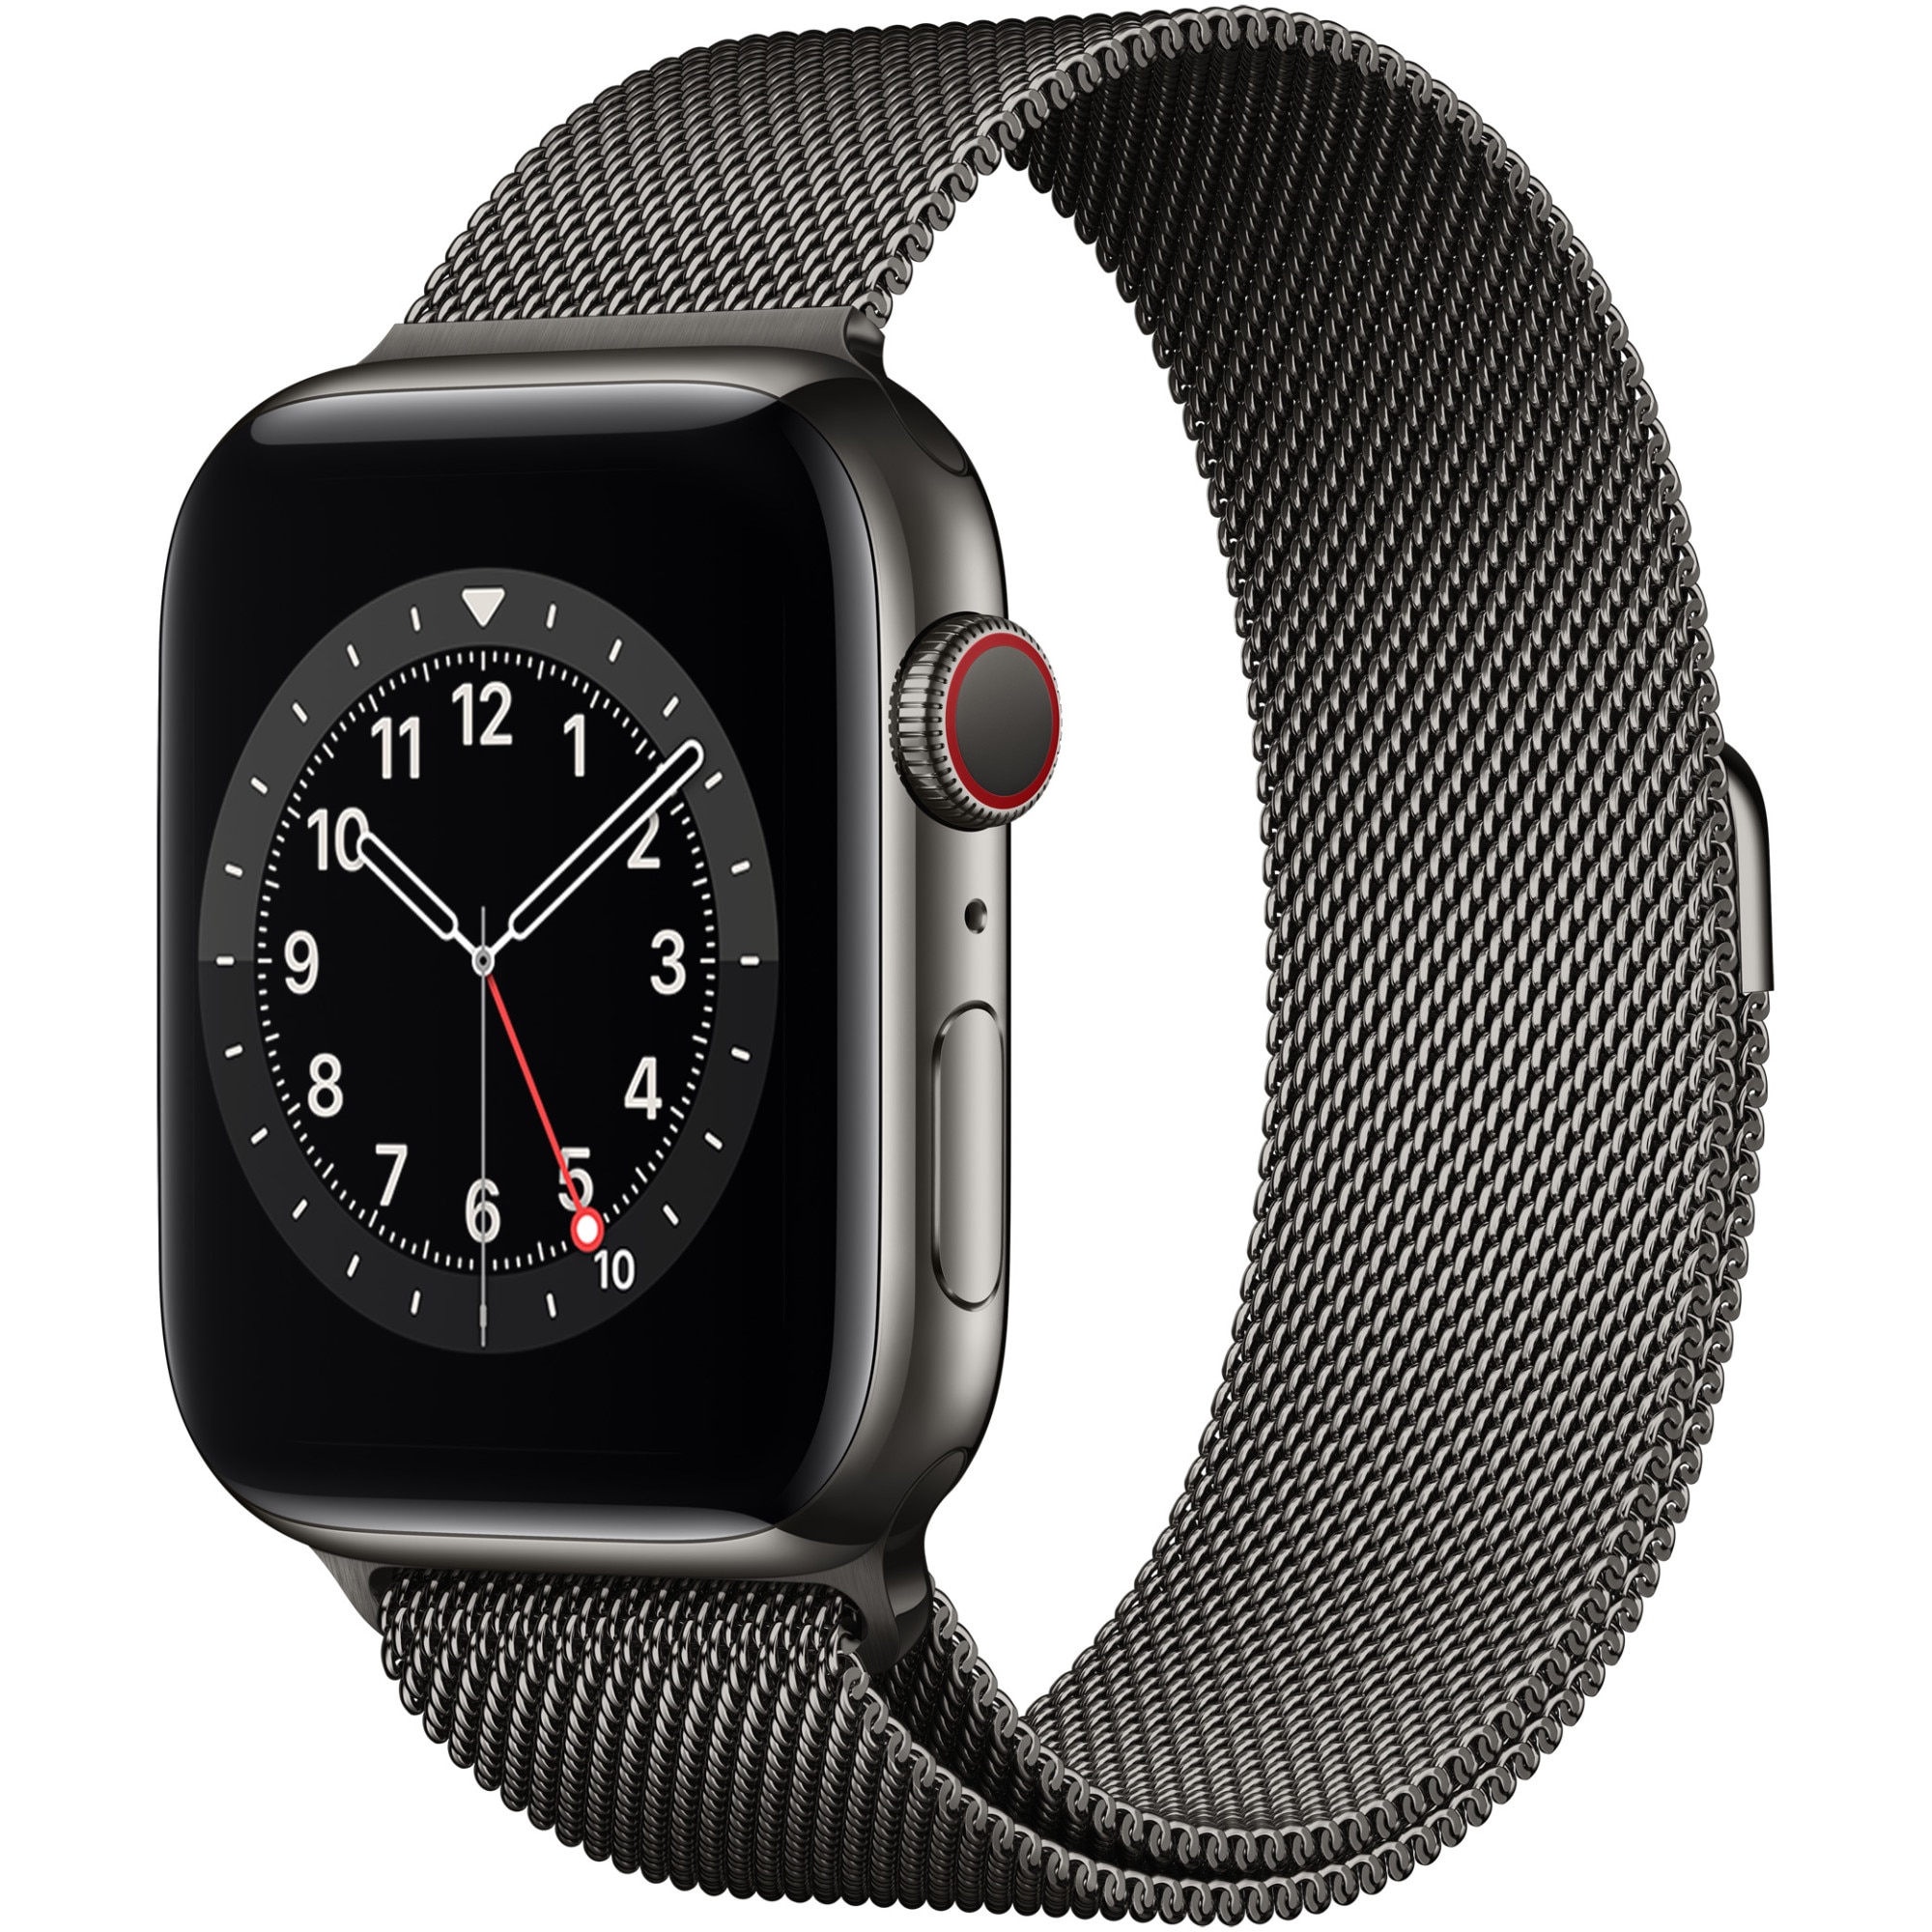 土日限定価格】Apple Watch Series 4 GPS+Cellular ステンレススチール 